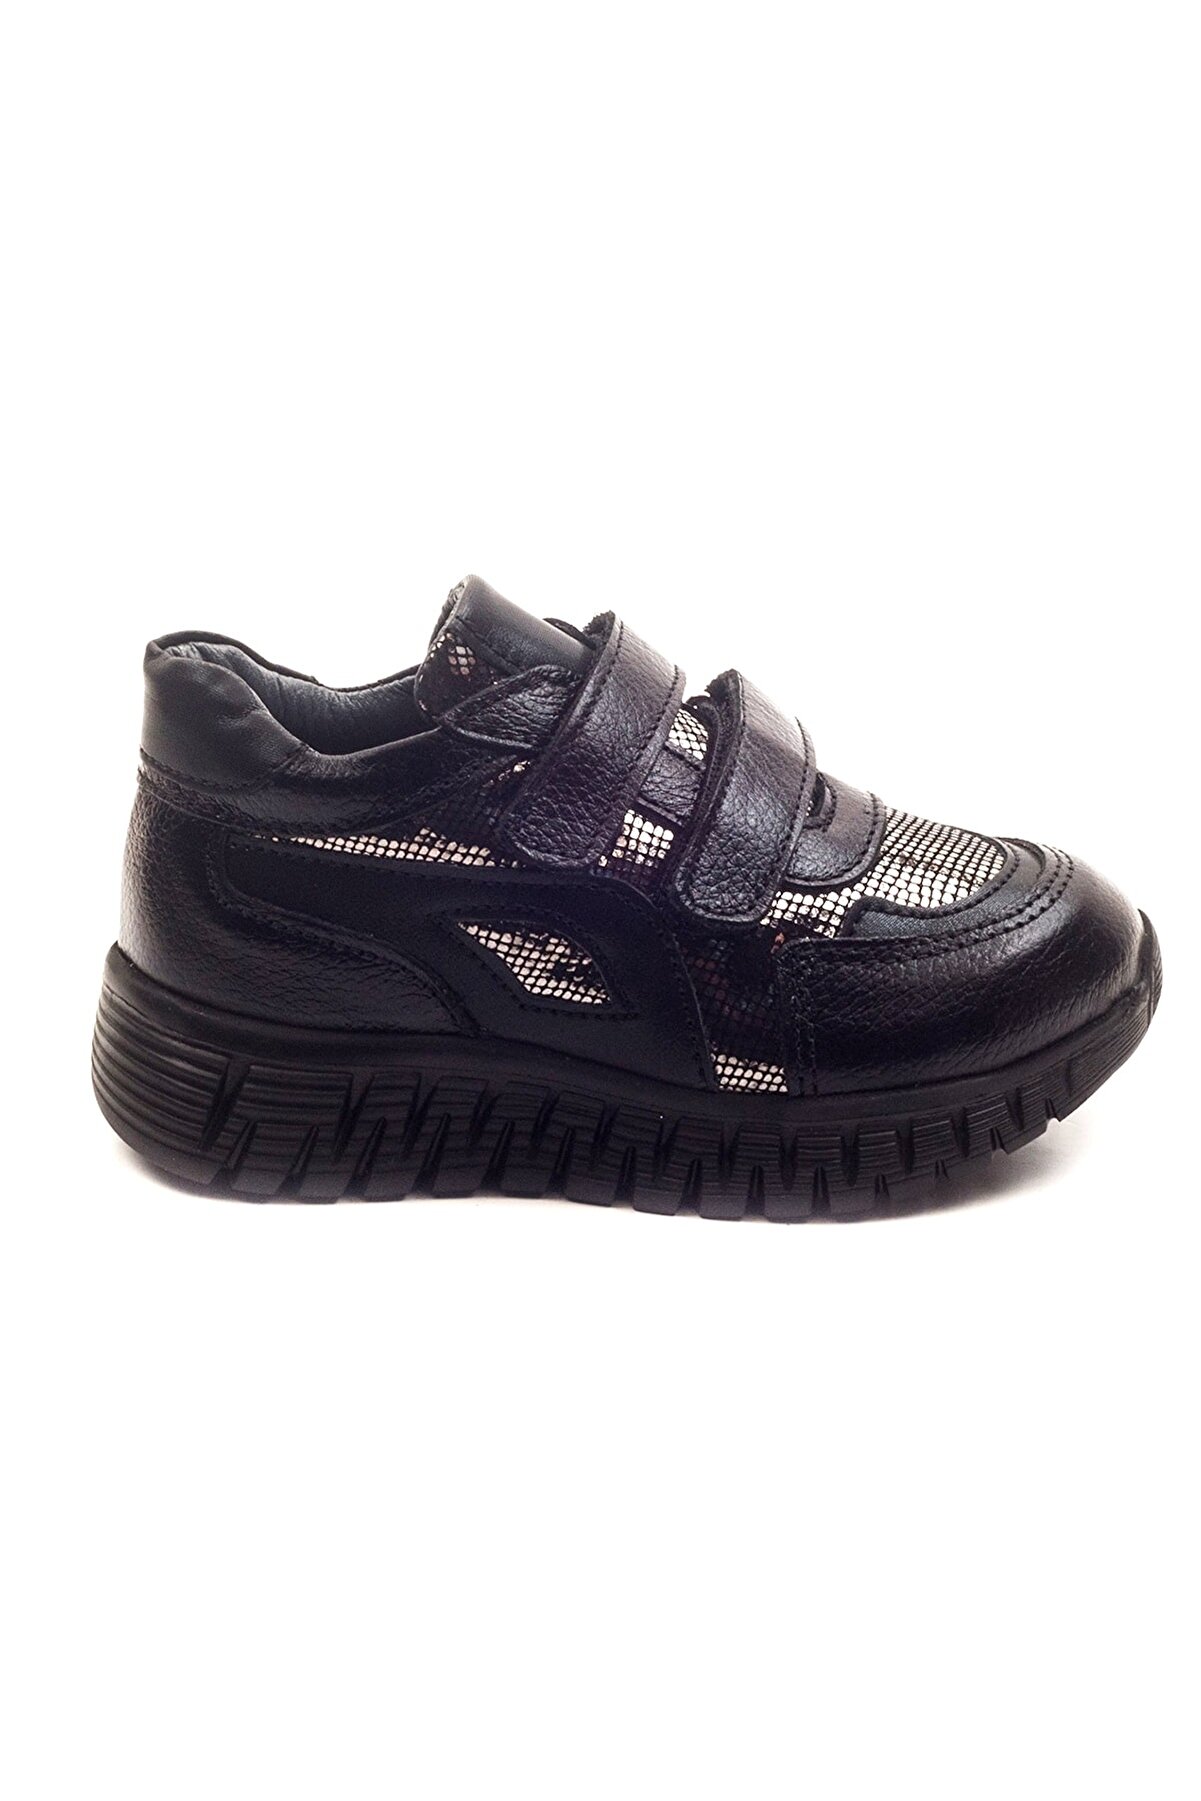 mnpc Kız Cocuk Siyah Deri Ortopedik Destekli Çocuk Ayakkabı